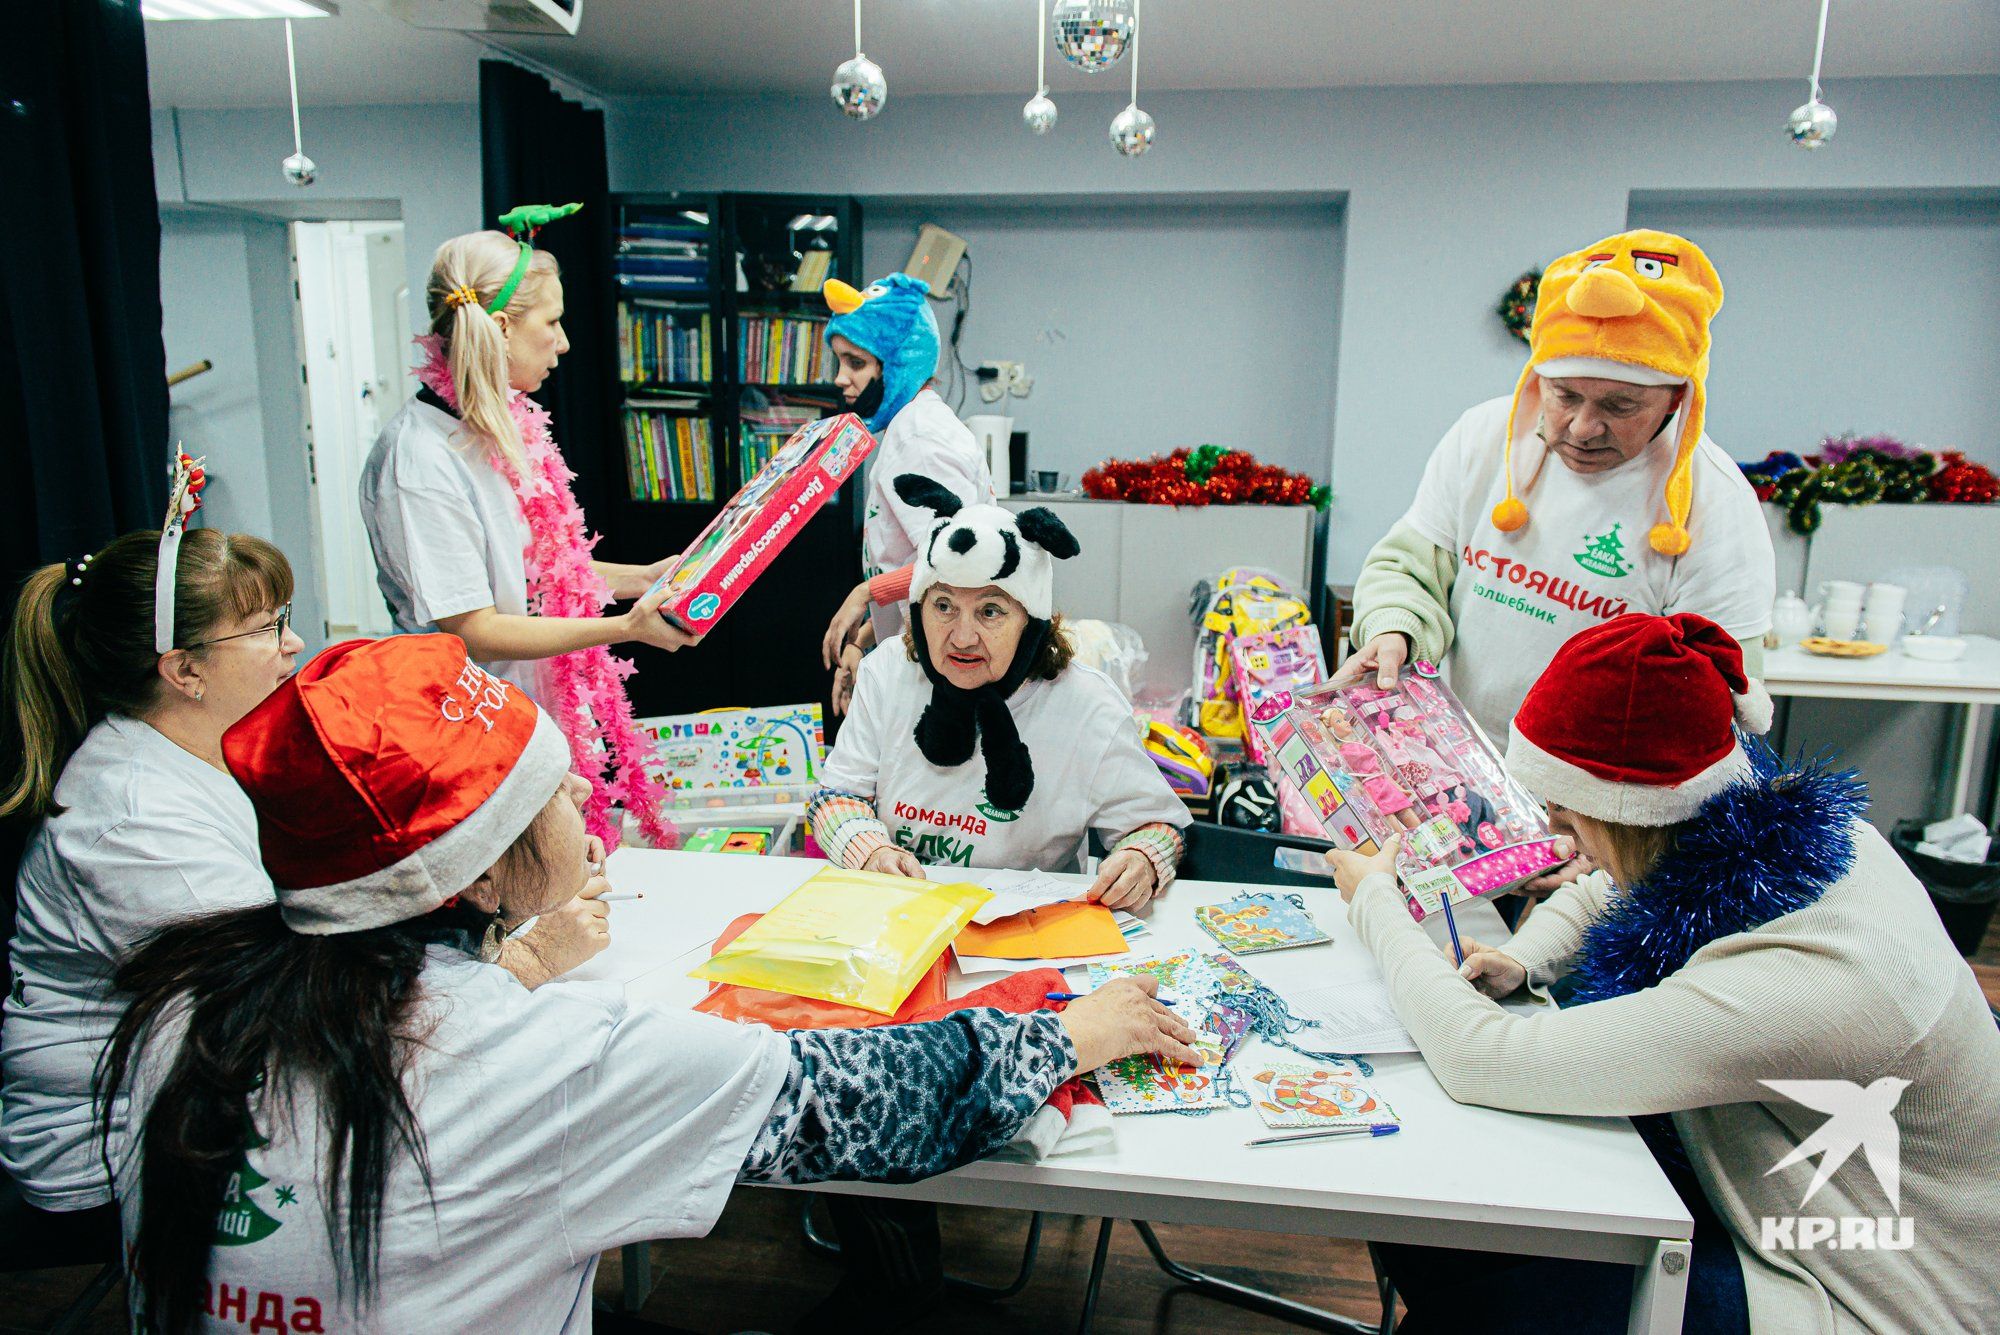 У Деда Мороза открылся собственный офис в Екатеринбурге